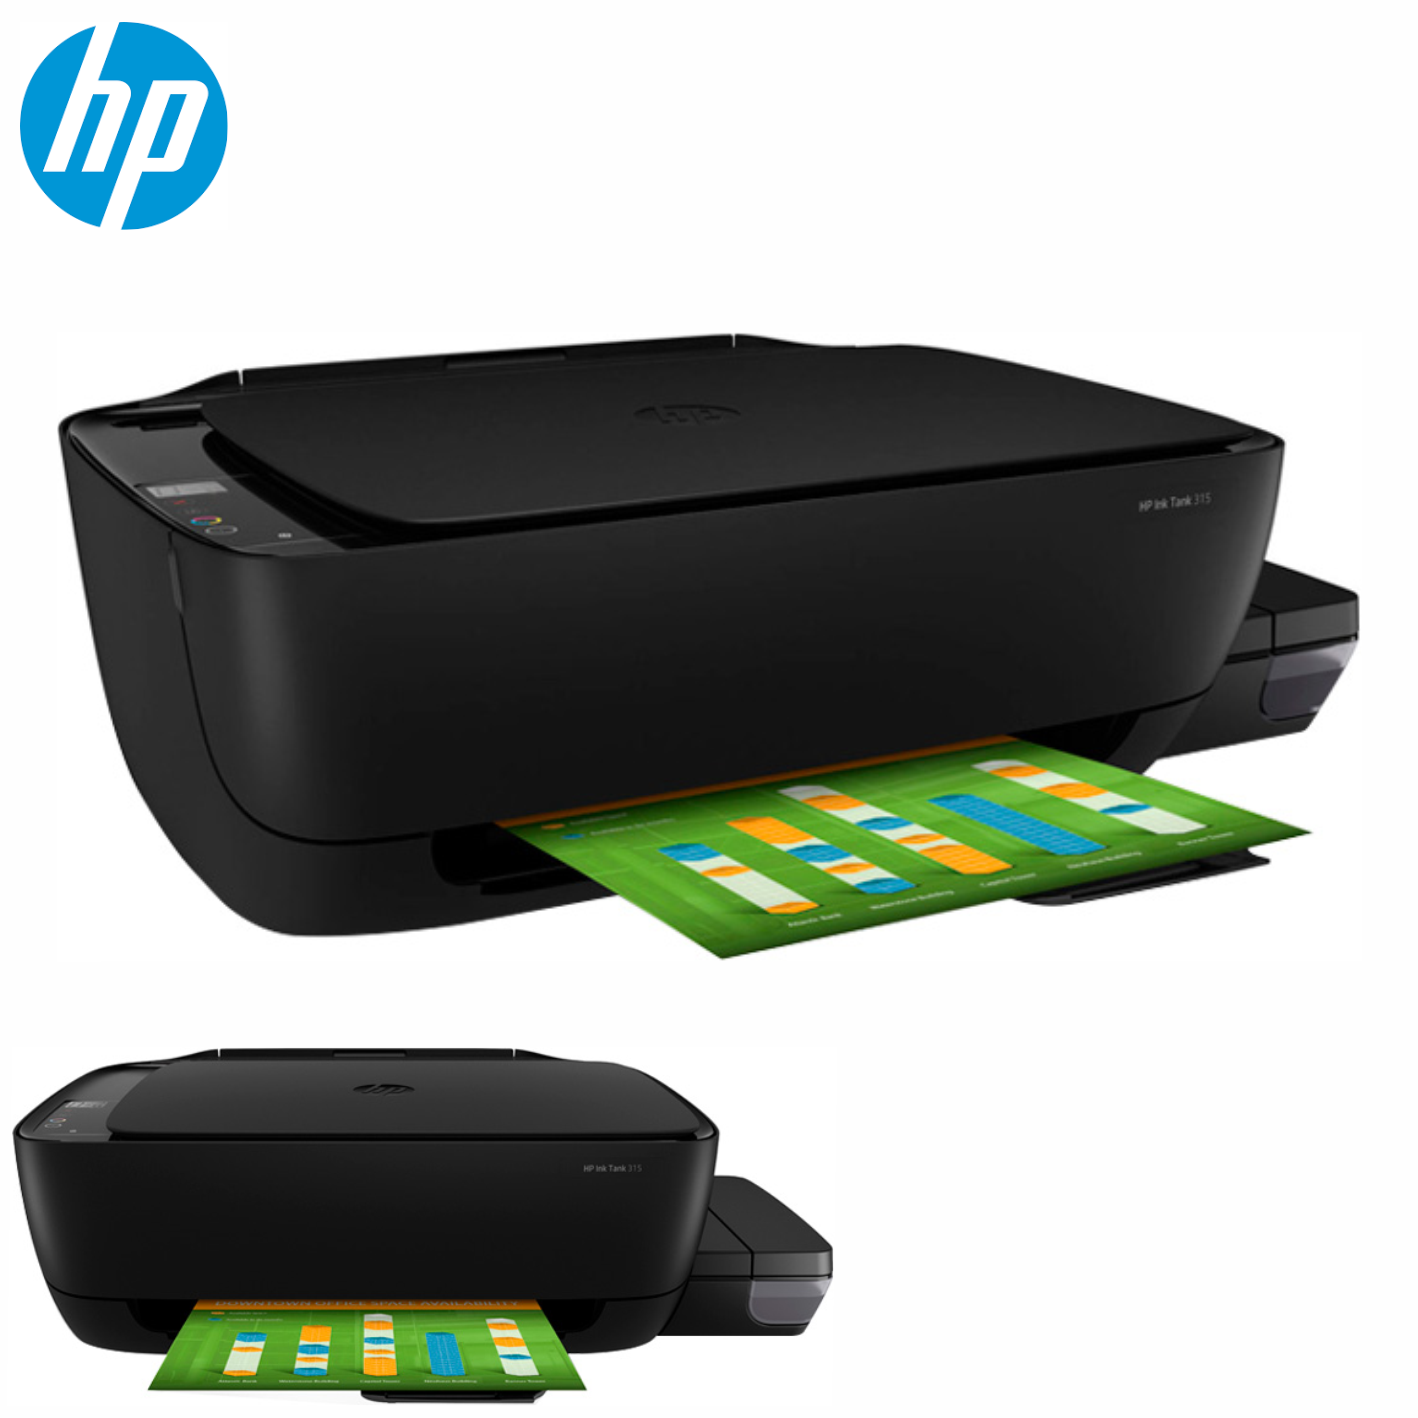 Impresora Multifuncional con tanque de tinta HP 315, Imprime/Escáner/Copia, USB